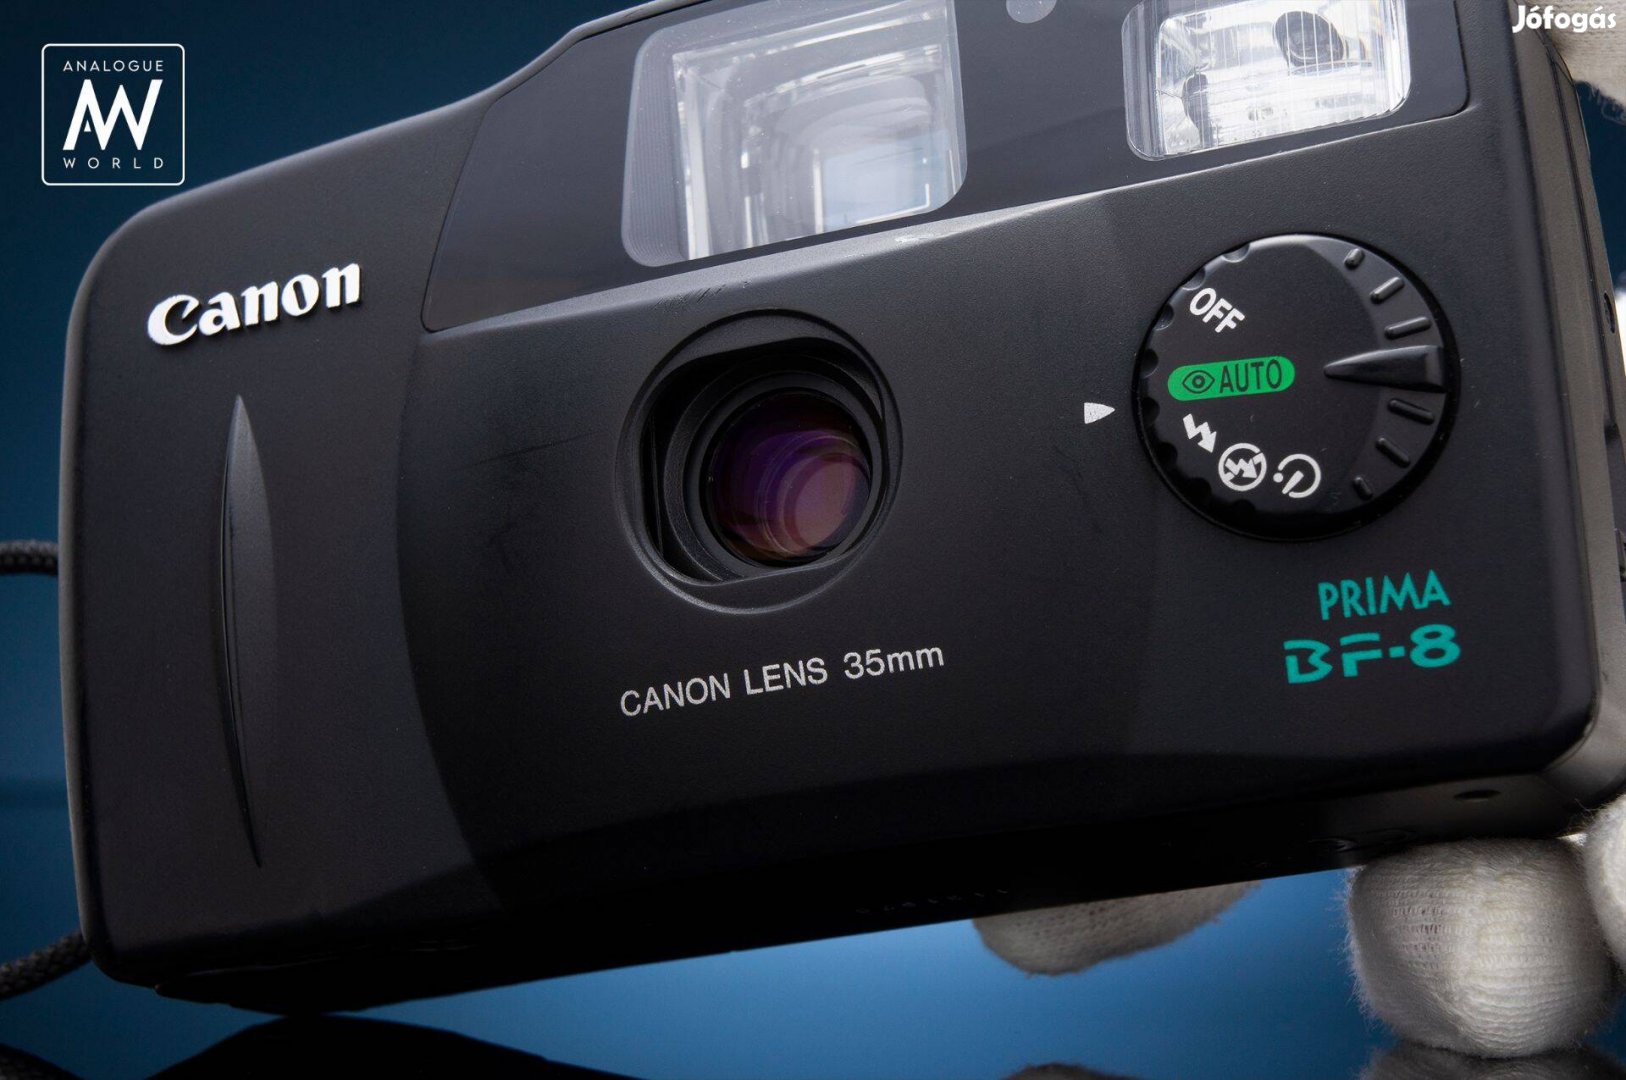 Canon Prima BF-8 + Film + Elem | Tesztelt Retro Filmes Fényképezőgép